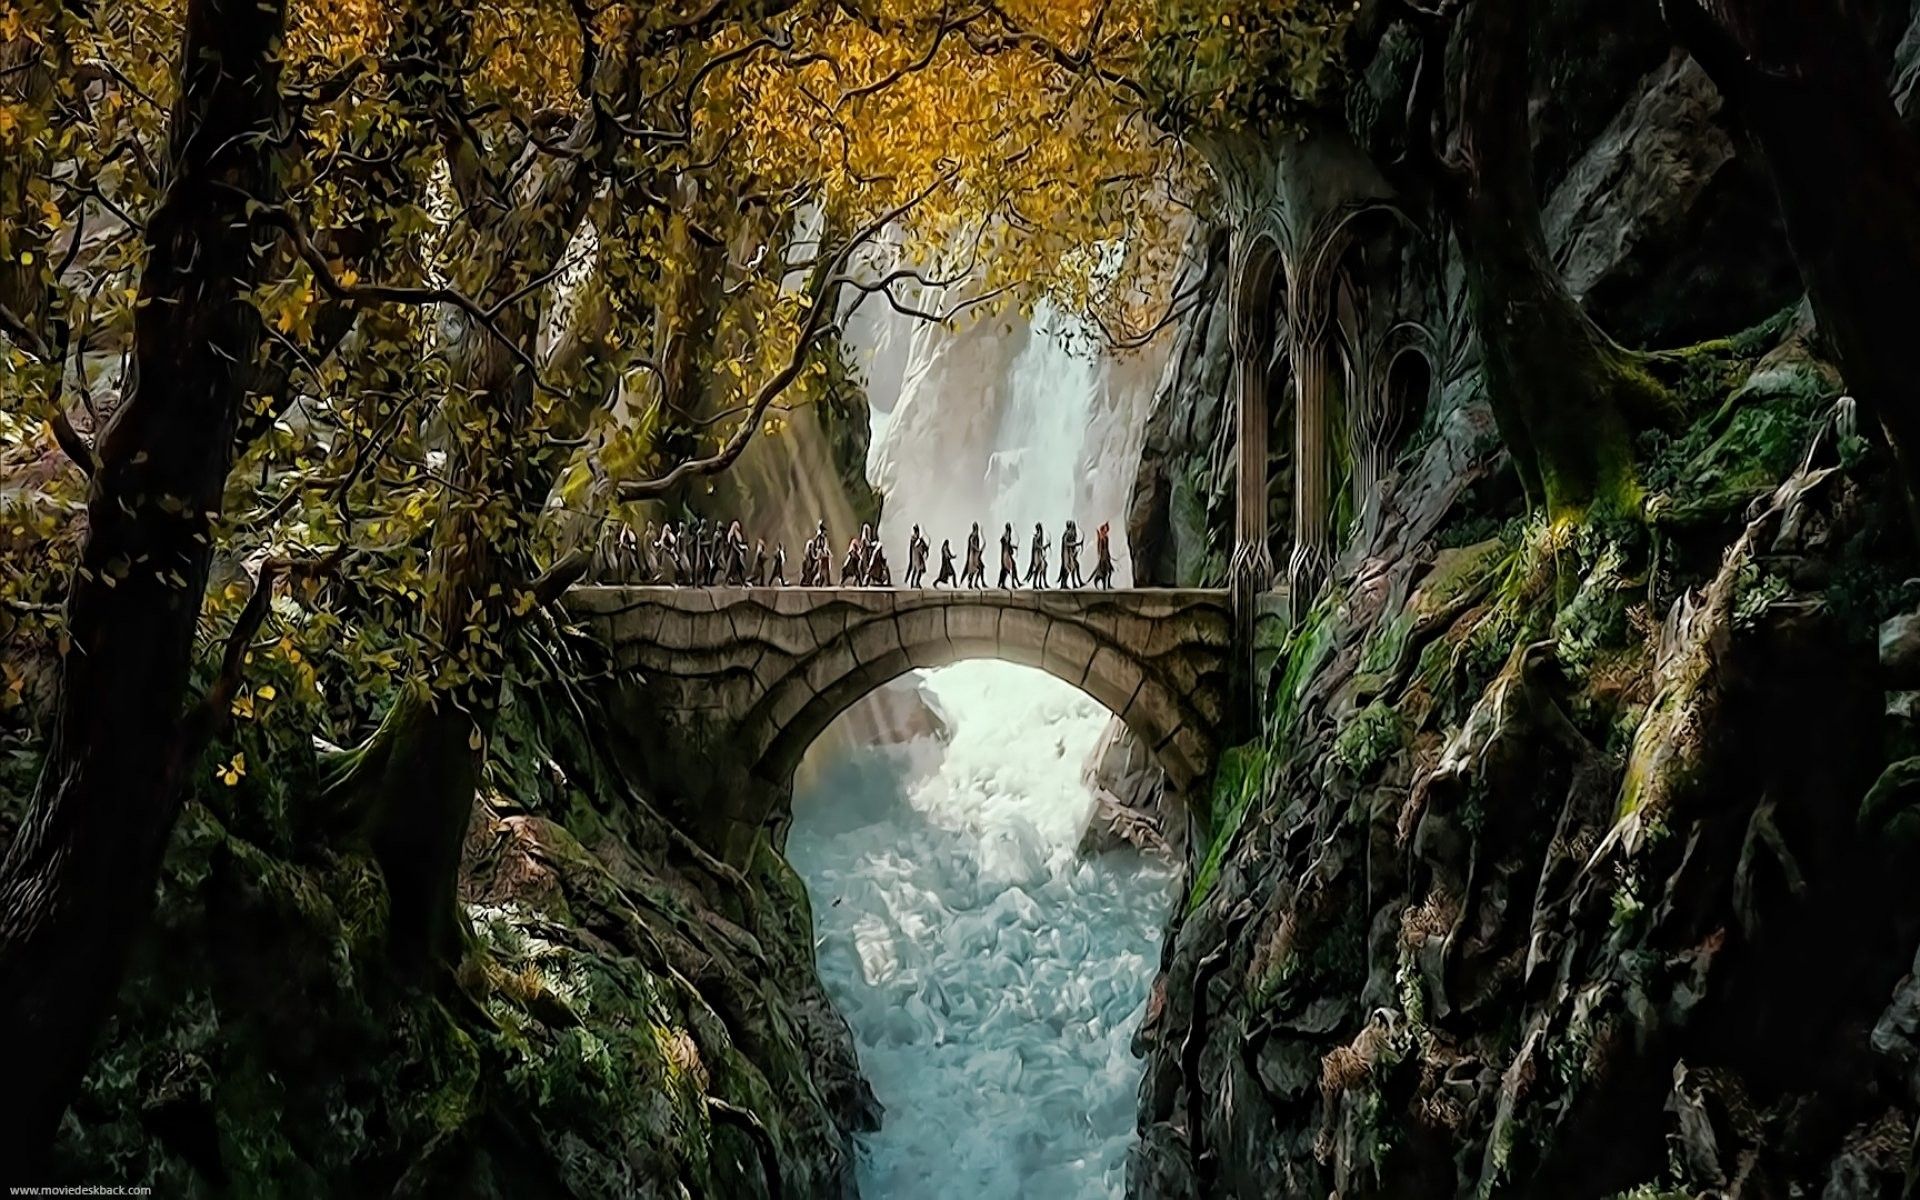 Wallpaper Cave là điểm đến lý tưởng cho những fan silmarillion của truyện Lord of the Rings muốn tìm kiếm những hình nền chất lượng cao. Những bức hình nền này sẽ giúp bạn tạo nên không gian làm việc với đầy đủ bầu không khí của các bộ phim Thần thoại Tolkien. Hãy cùng khám phá ngay.